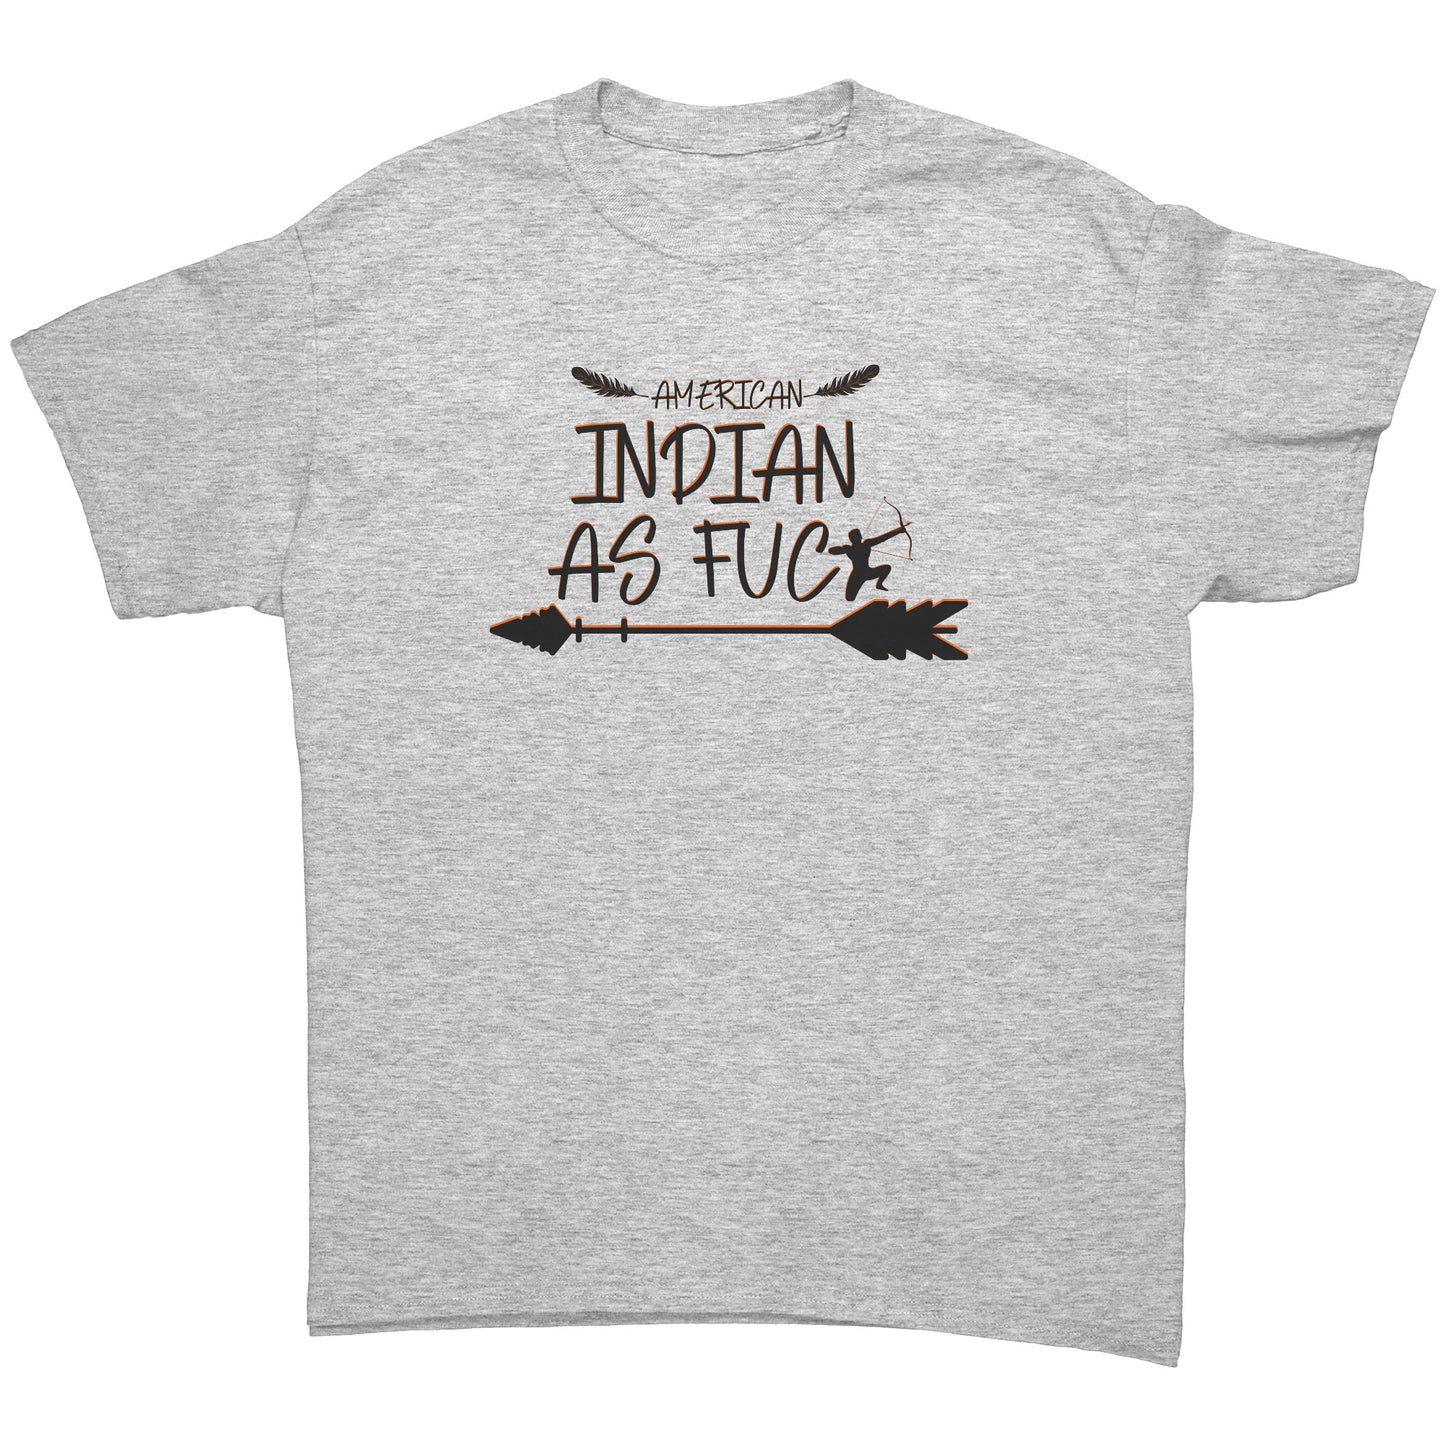 The "American Indian AF" T-Shirt (Men's)